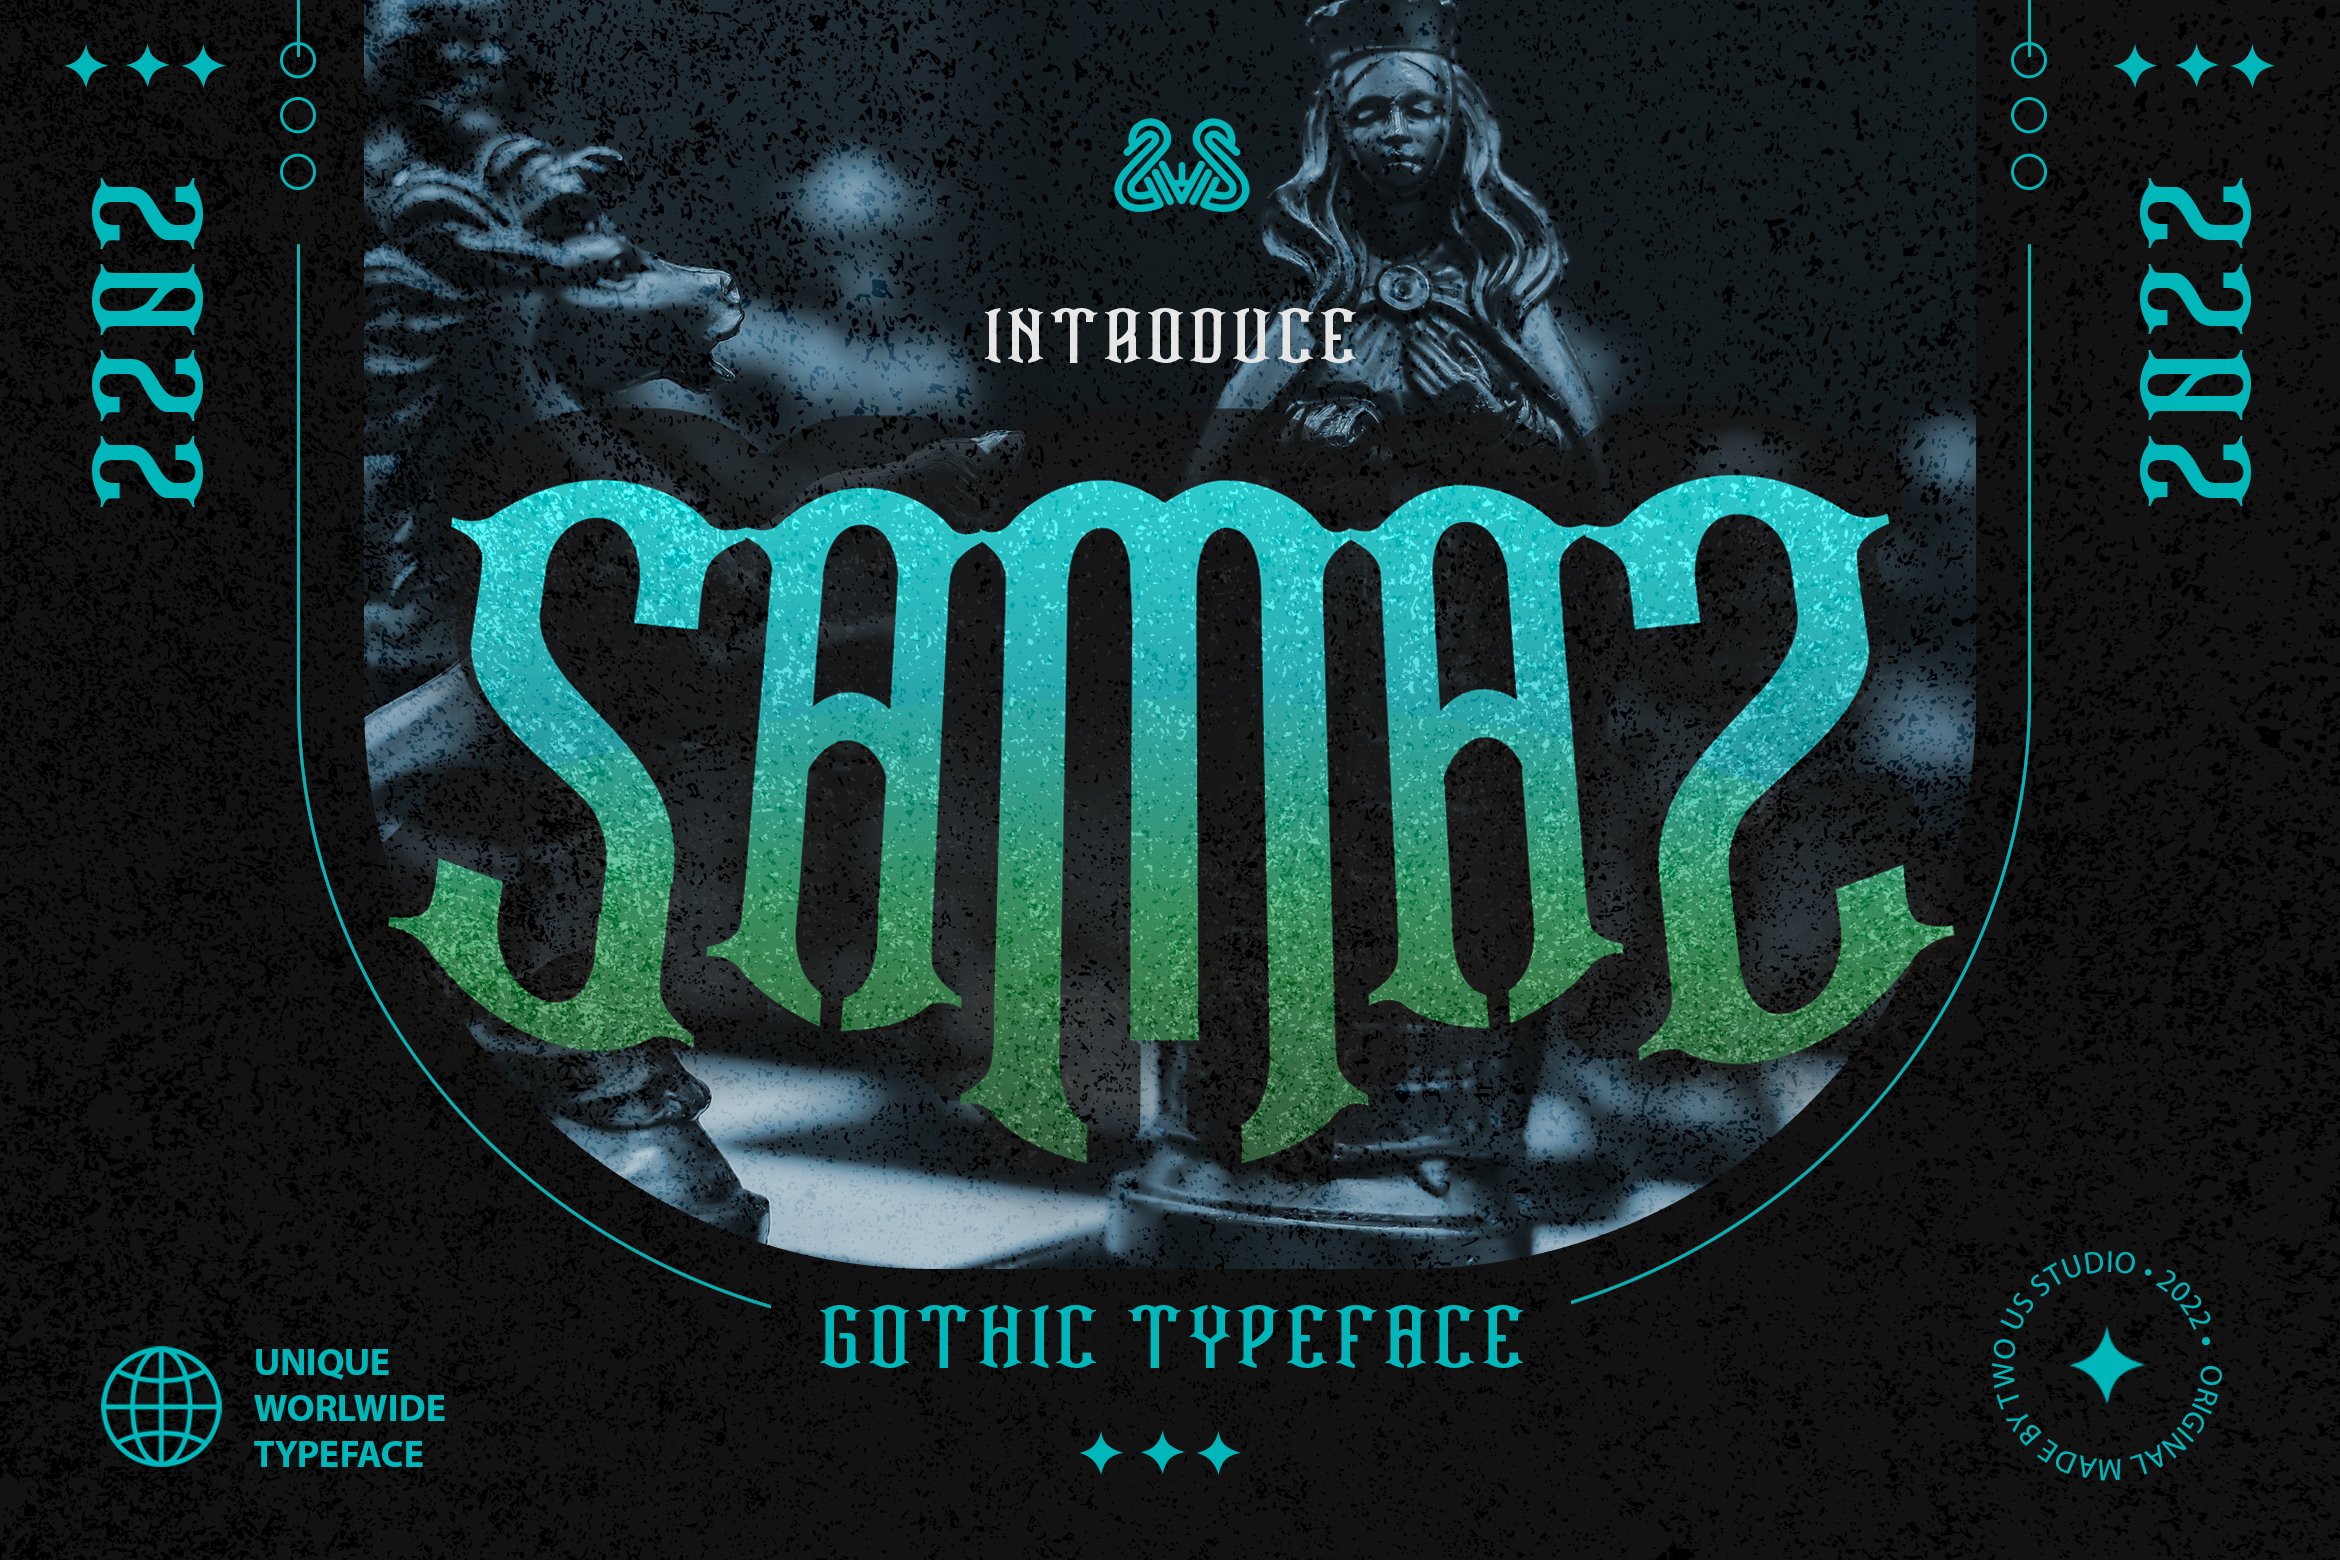 Samaz - Gothic Vintage Typeface cover image.